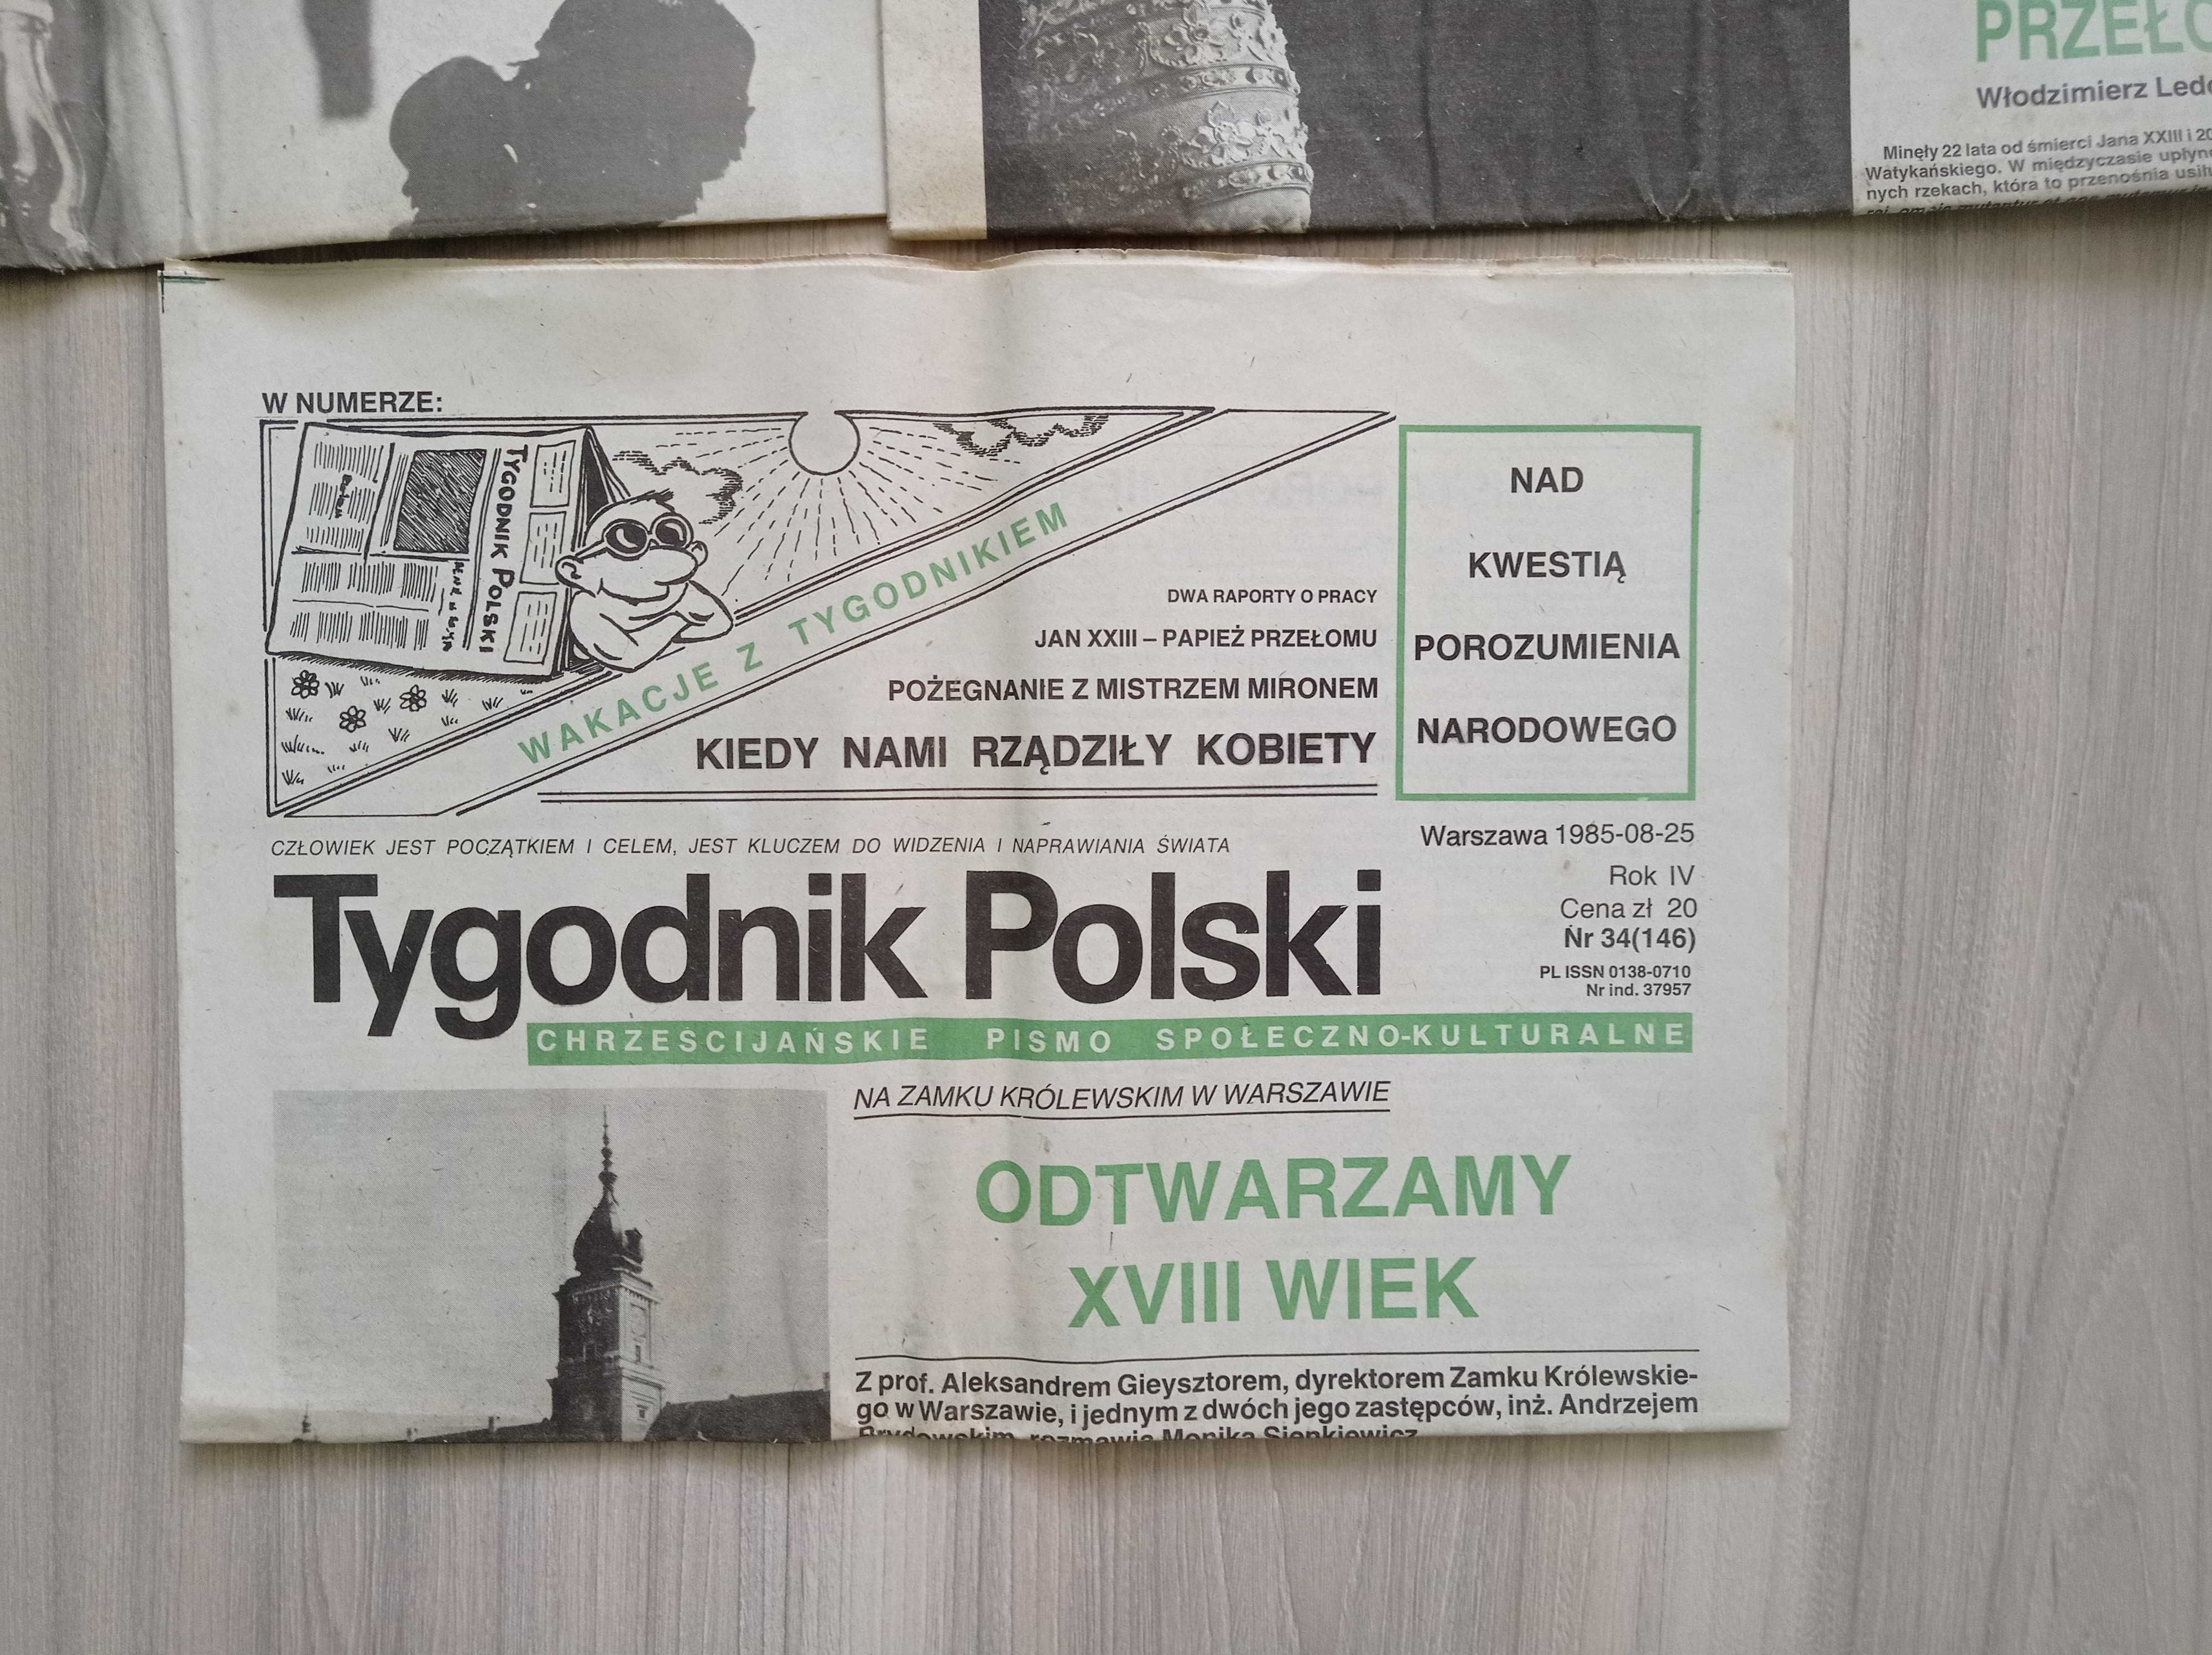 Tygodnik Polski, 1985 rok, zestaw 2